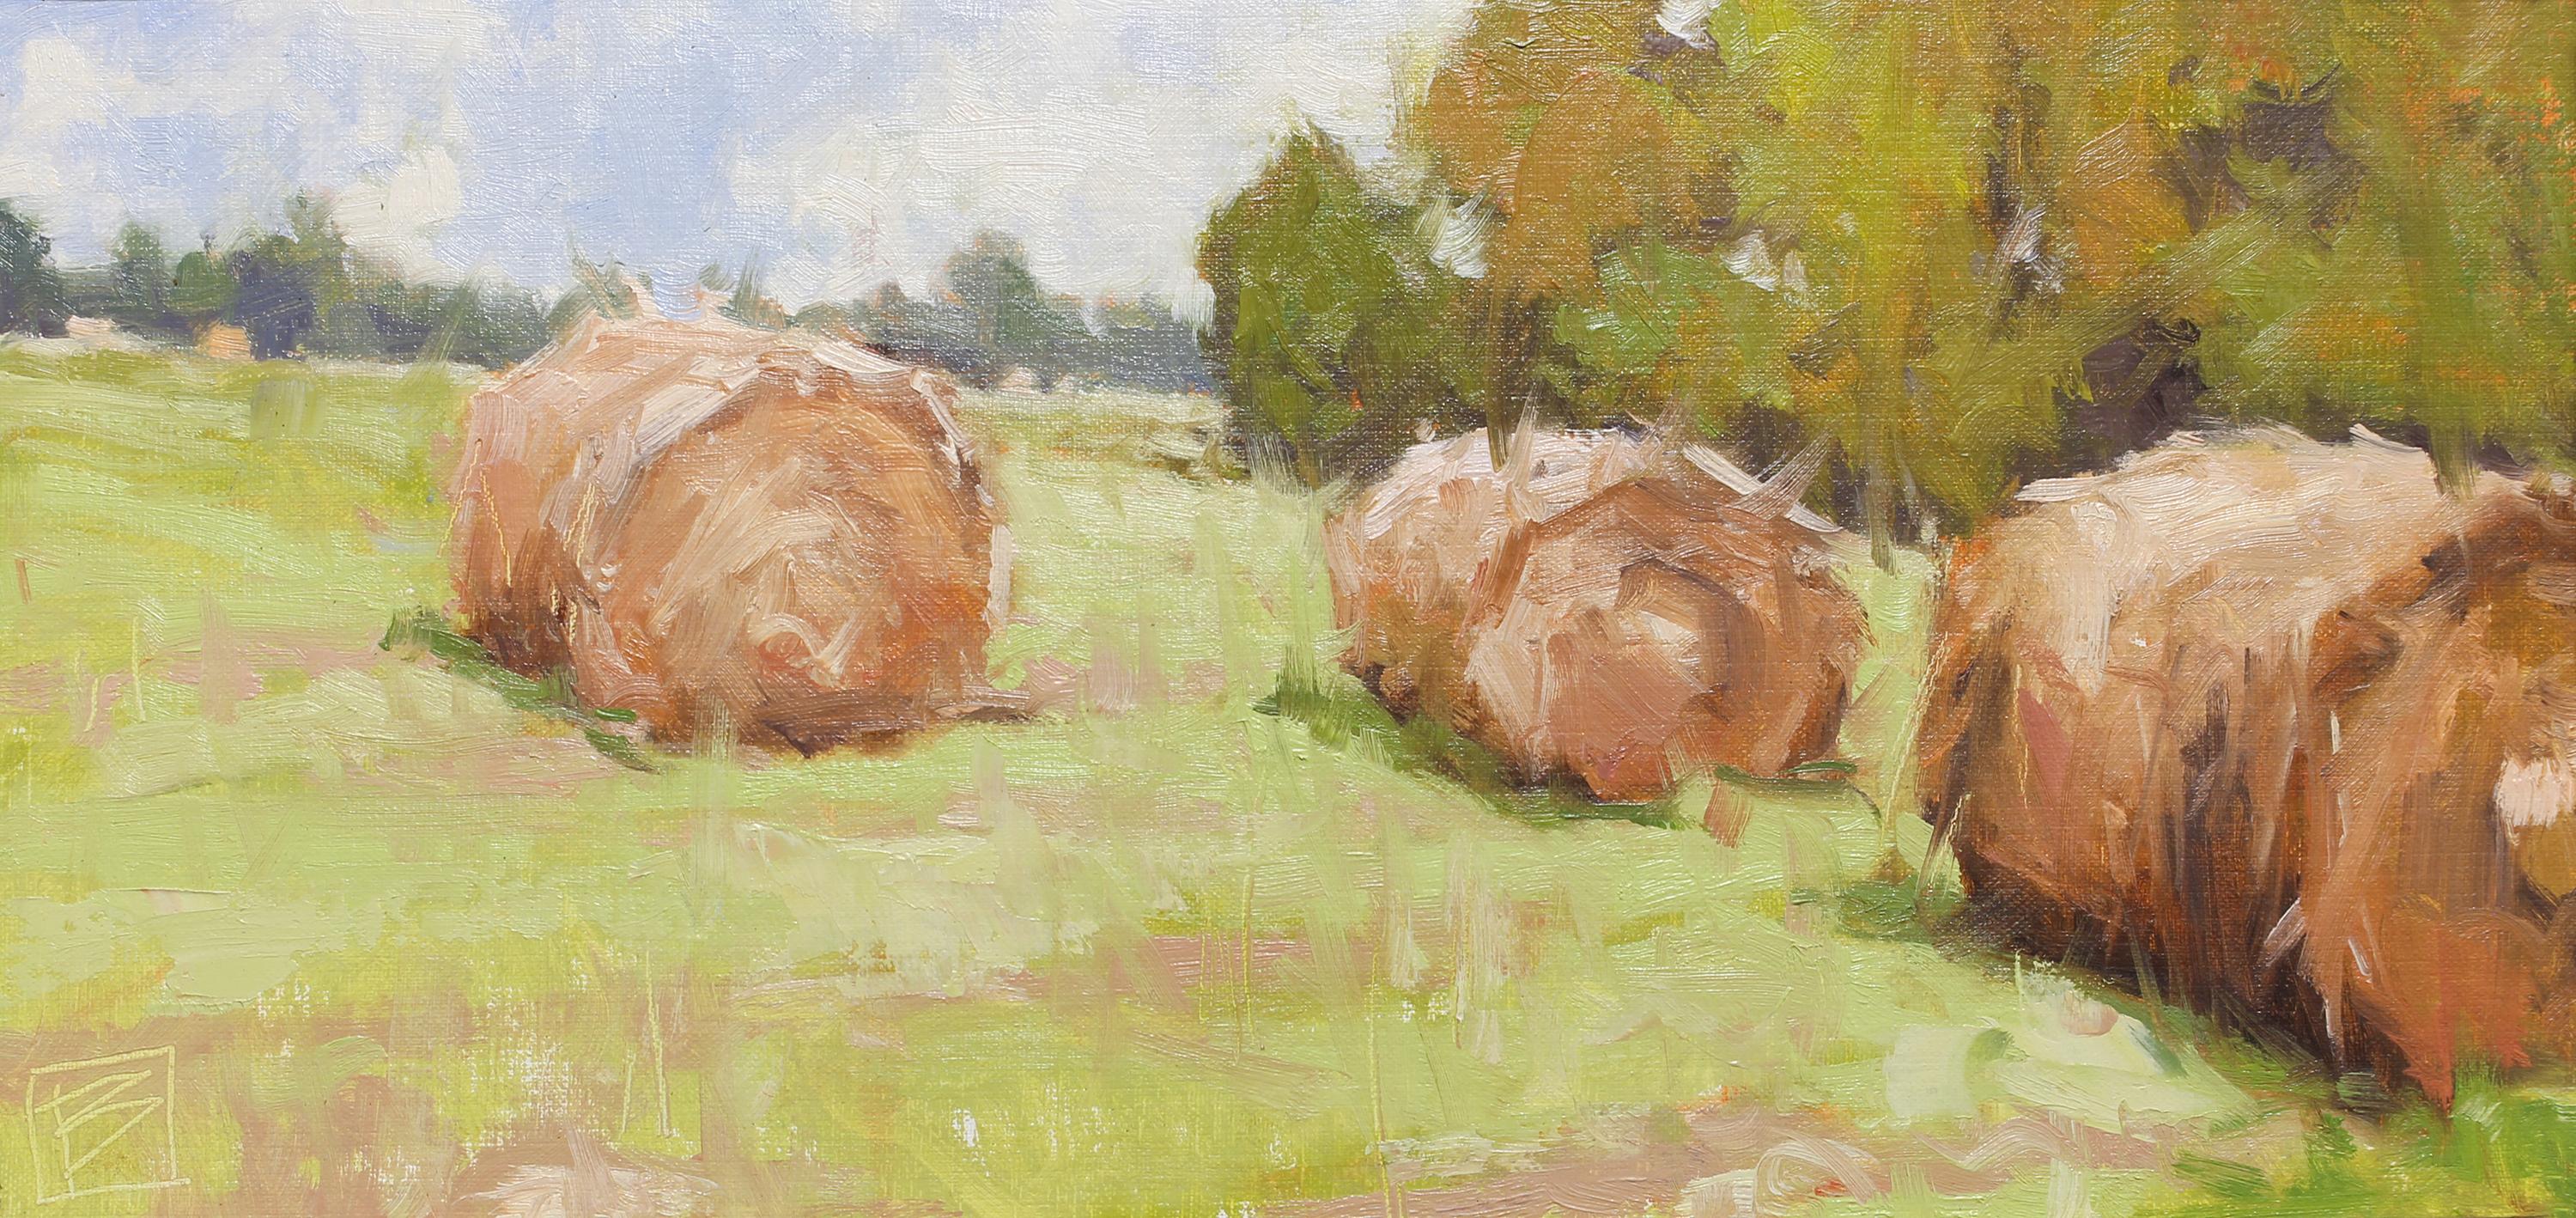 Landscape Painting David Boyd - "Afternoon Haze" - Peinture impressionniste de paysage en plein air, paysagère, bélière